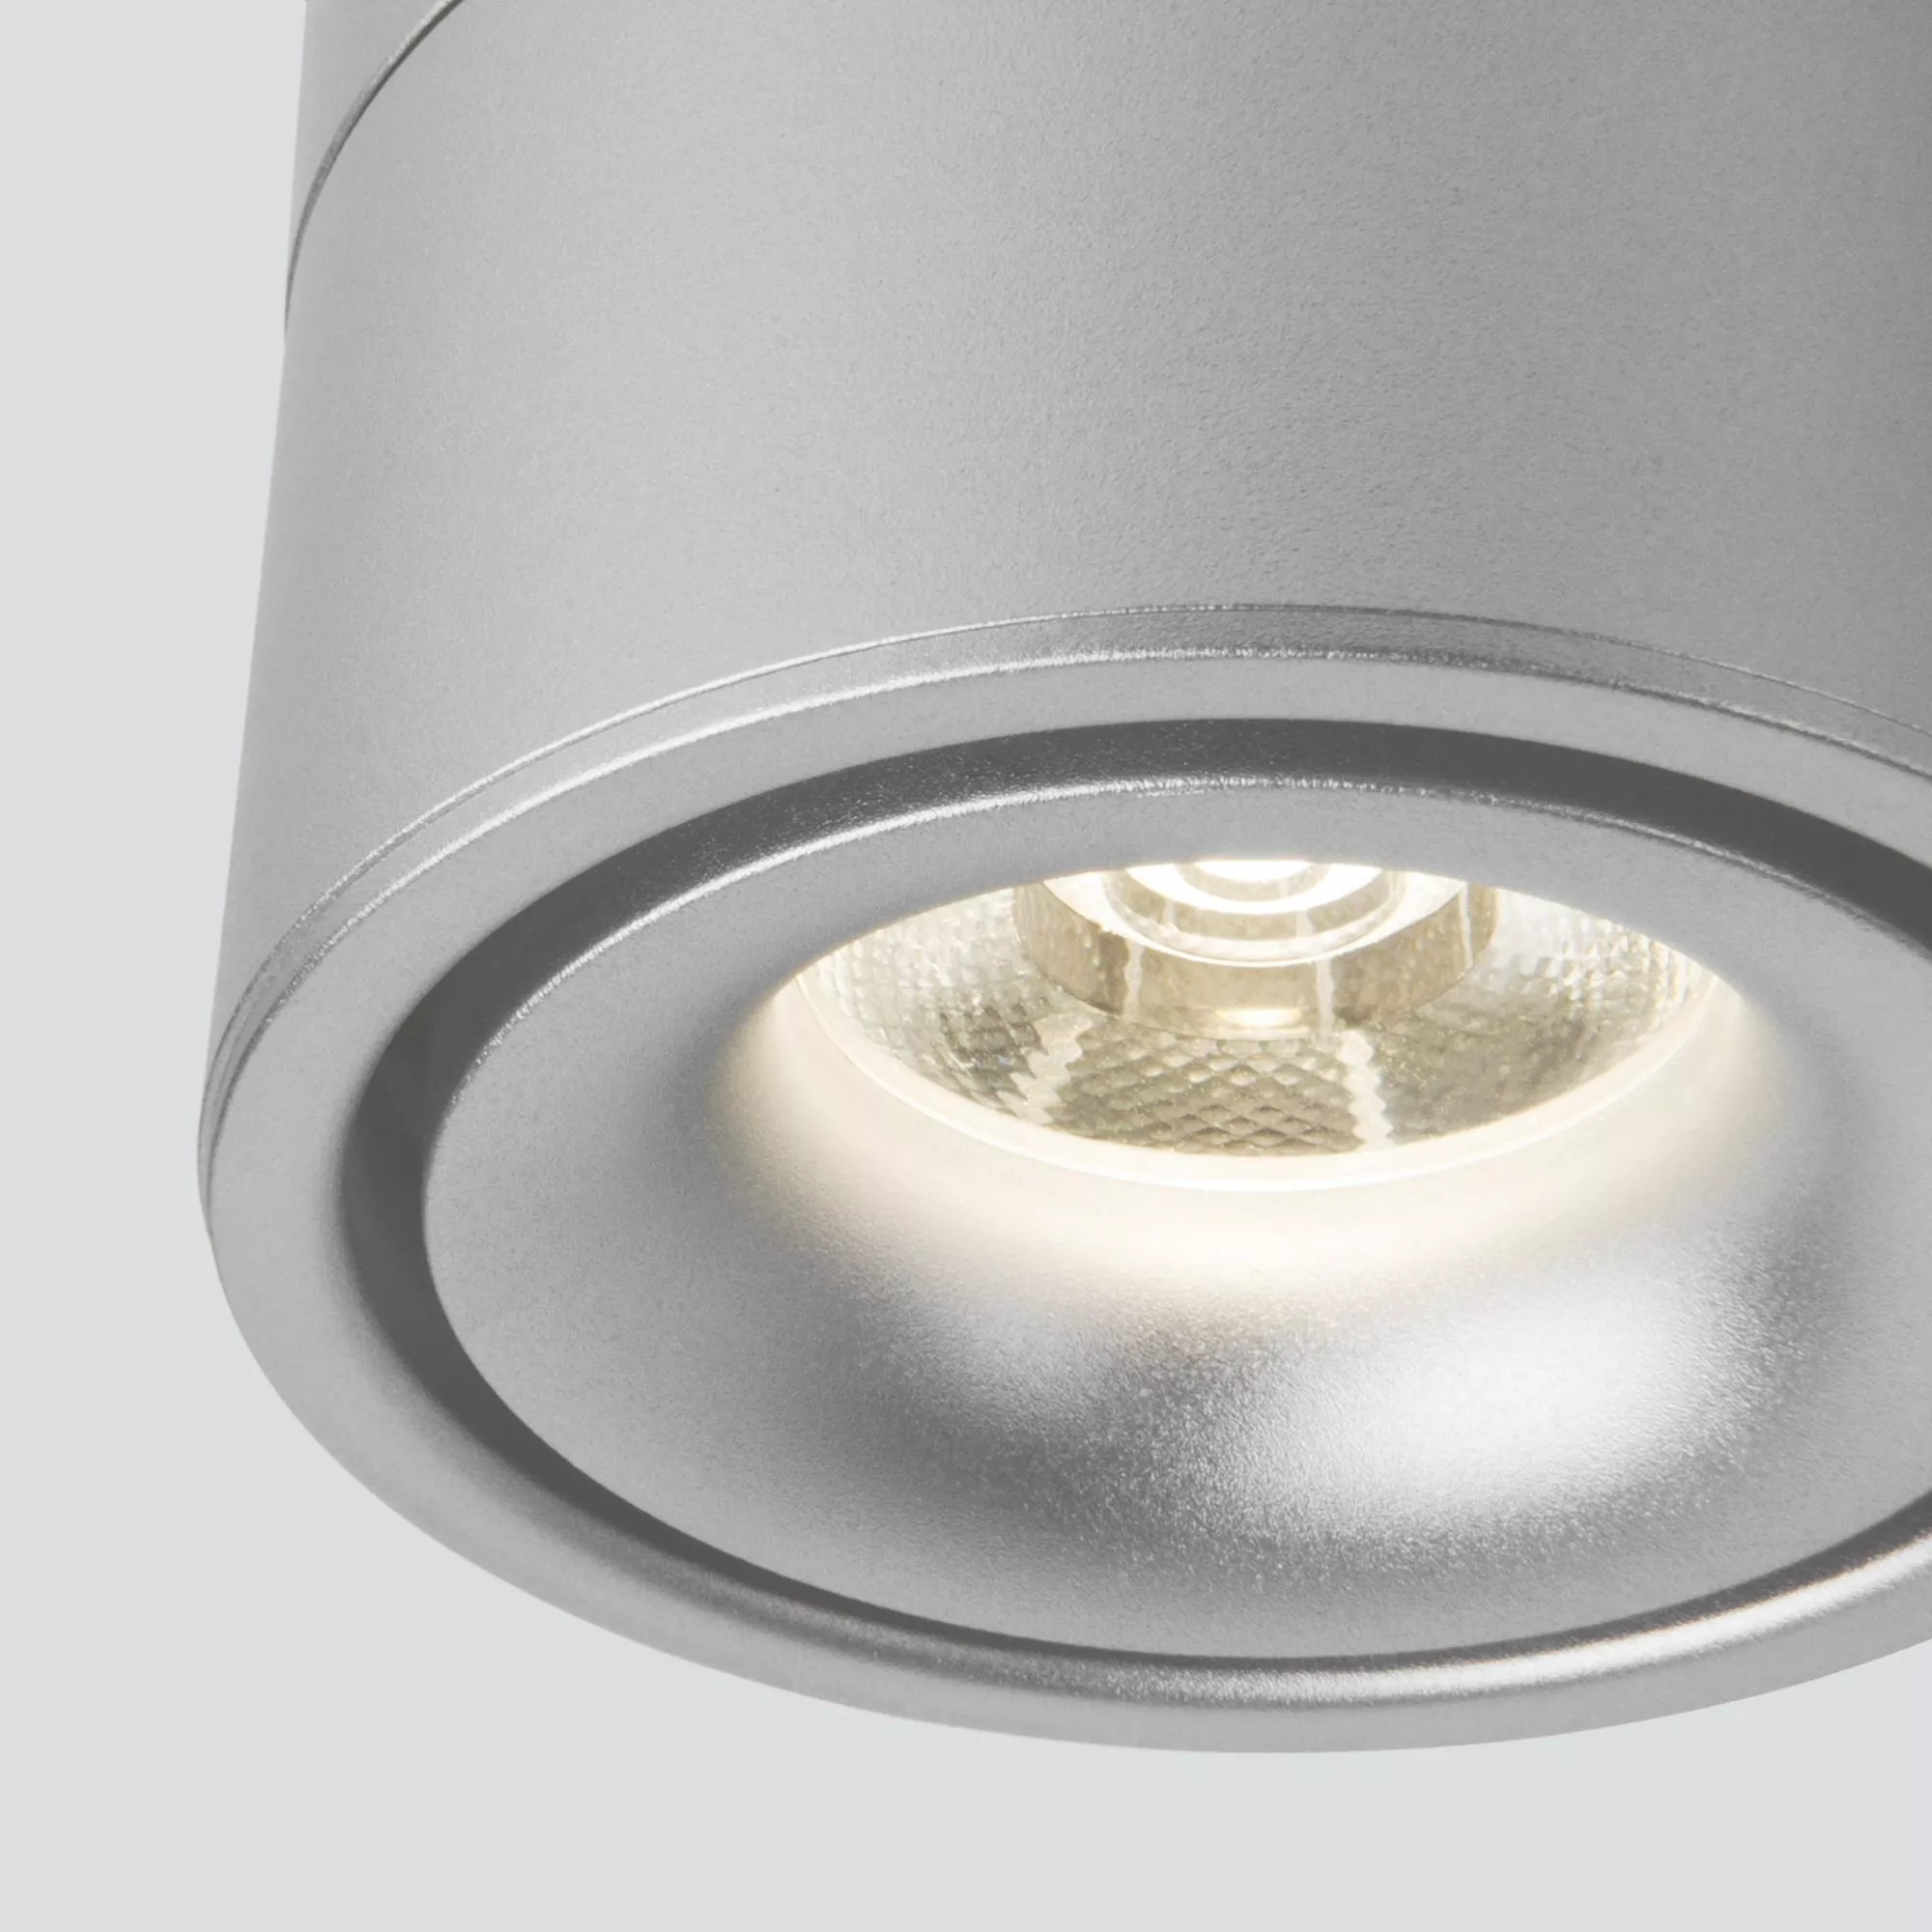 Точечный накладной светильник Elektrostandard Klips DLR031 15W 4200K Серебро